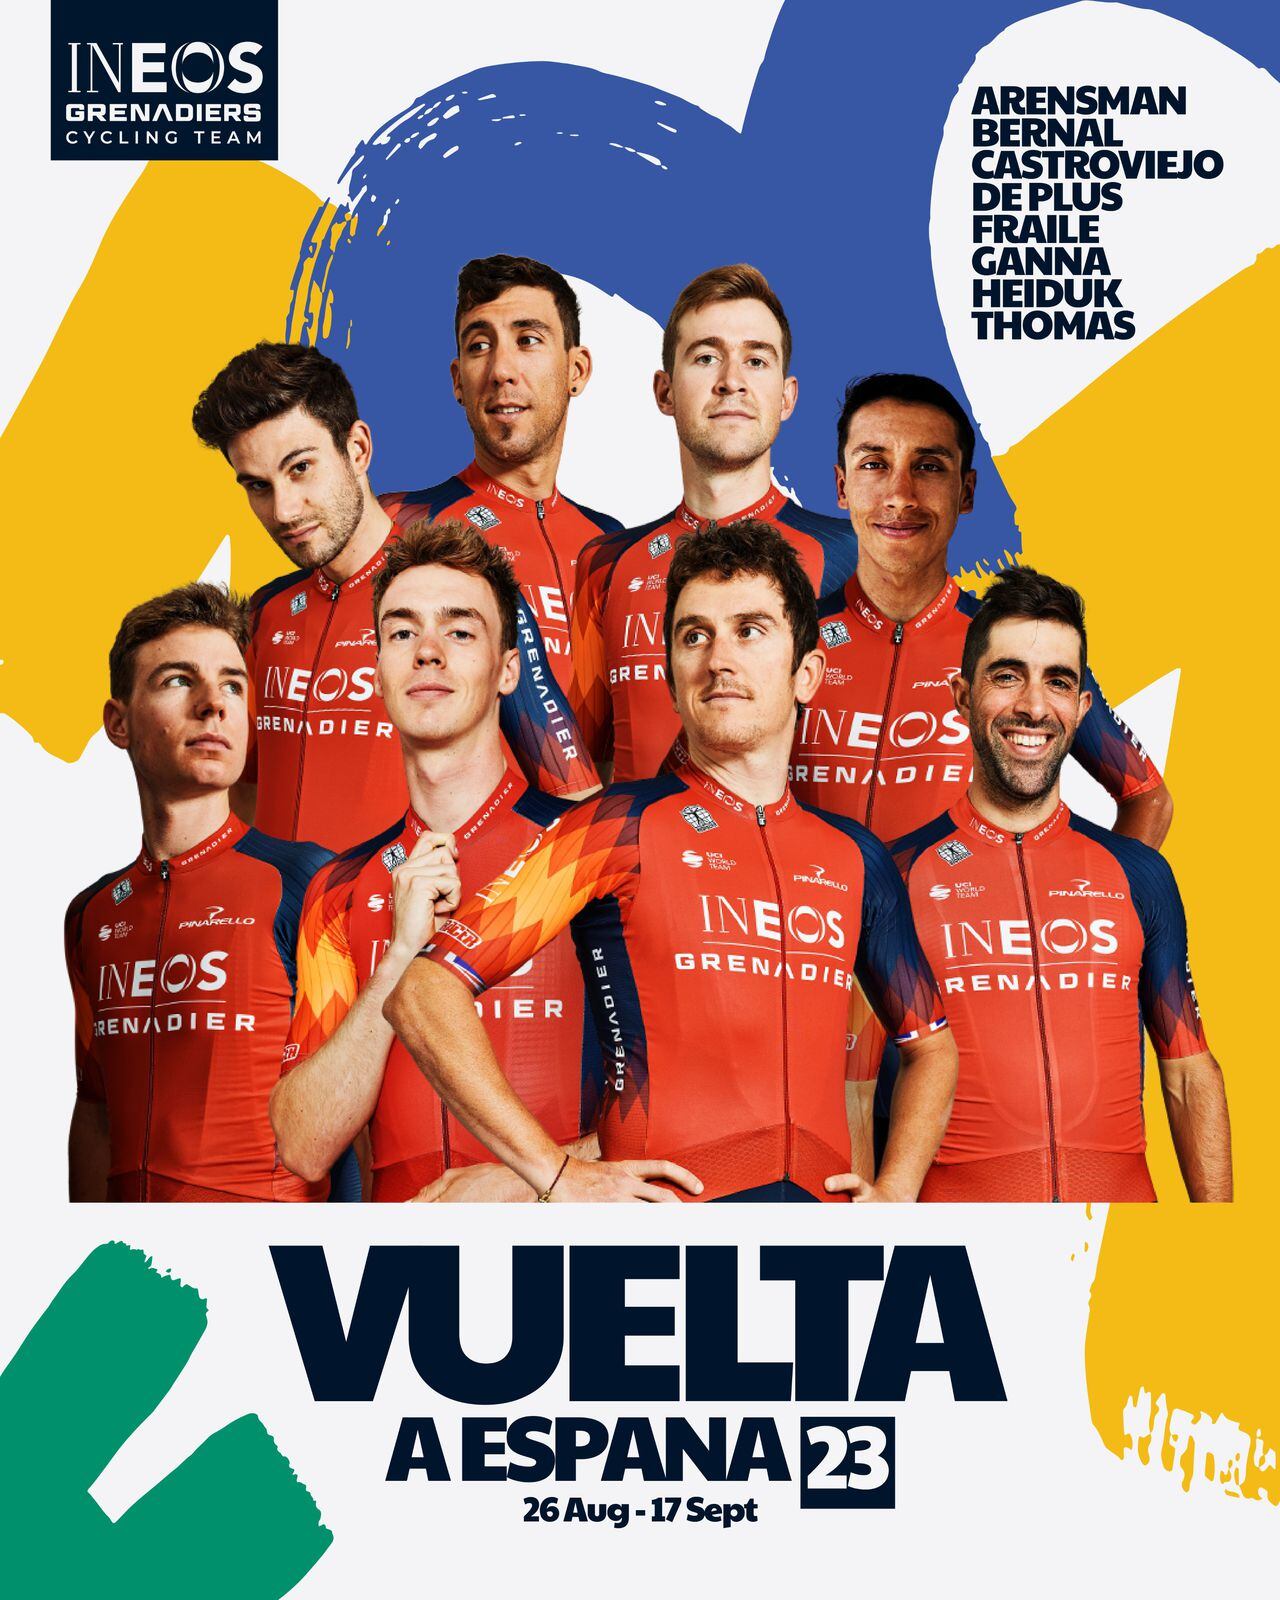 Egan Bernal integra el equipo del Ineos Grenadiers para la Vuelta a España 2023.